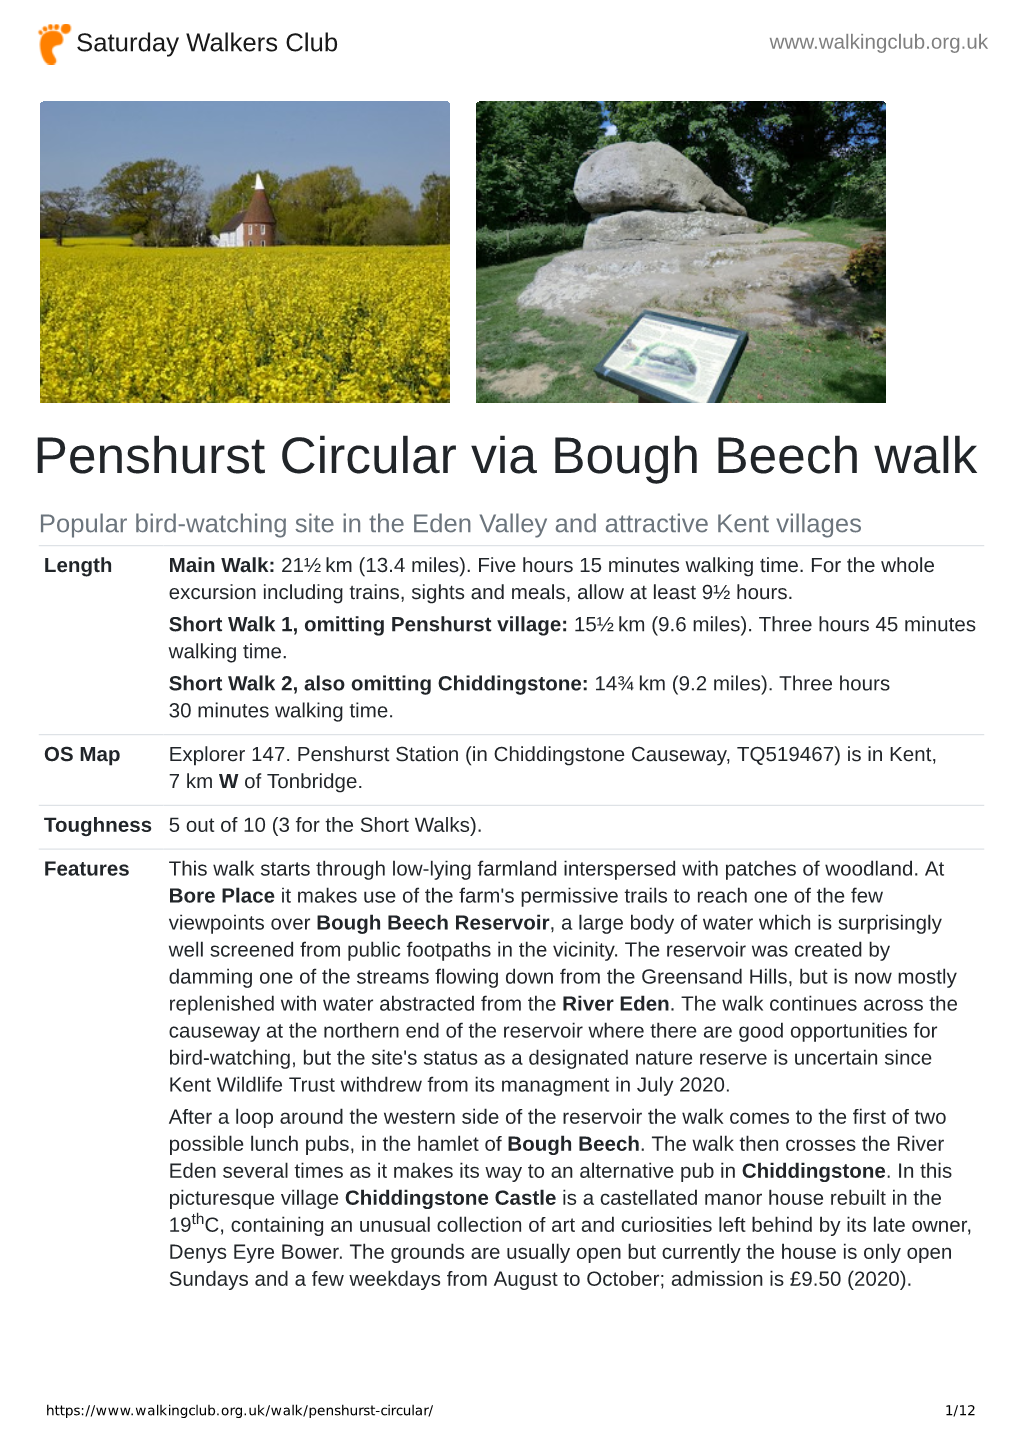 Penshurst Circular Via Bough Beech Walk